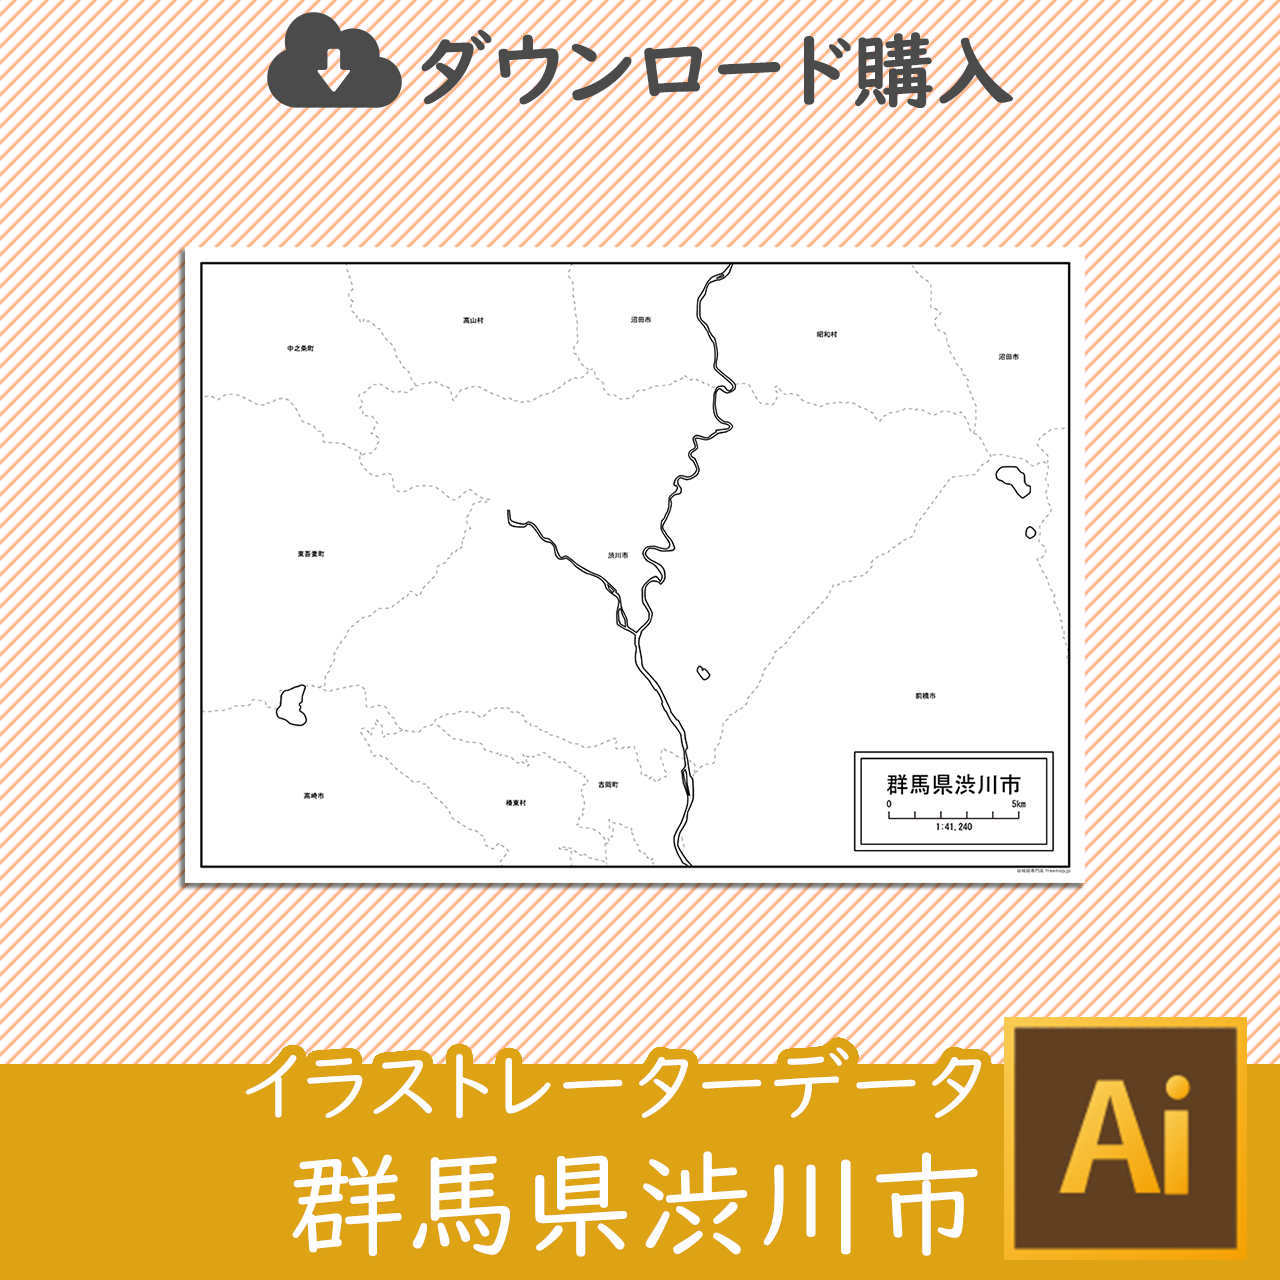 渋川市のaiデータのサムネイル画像